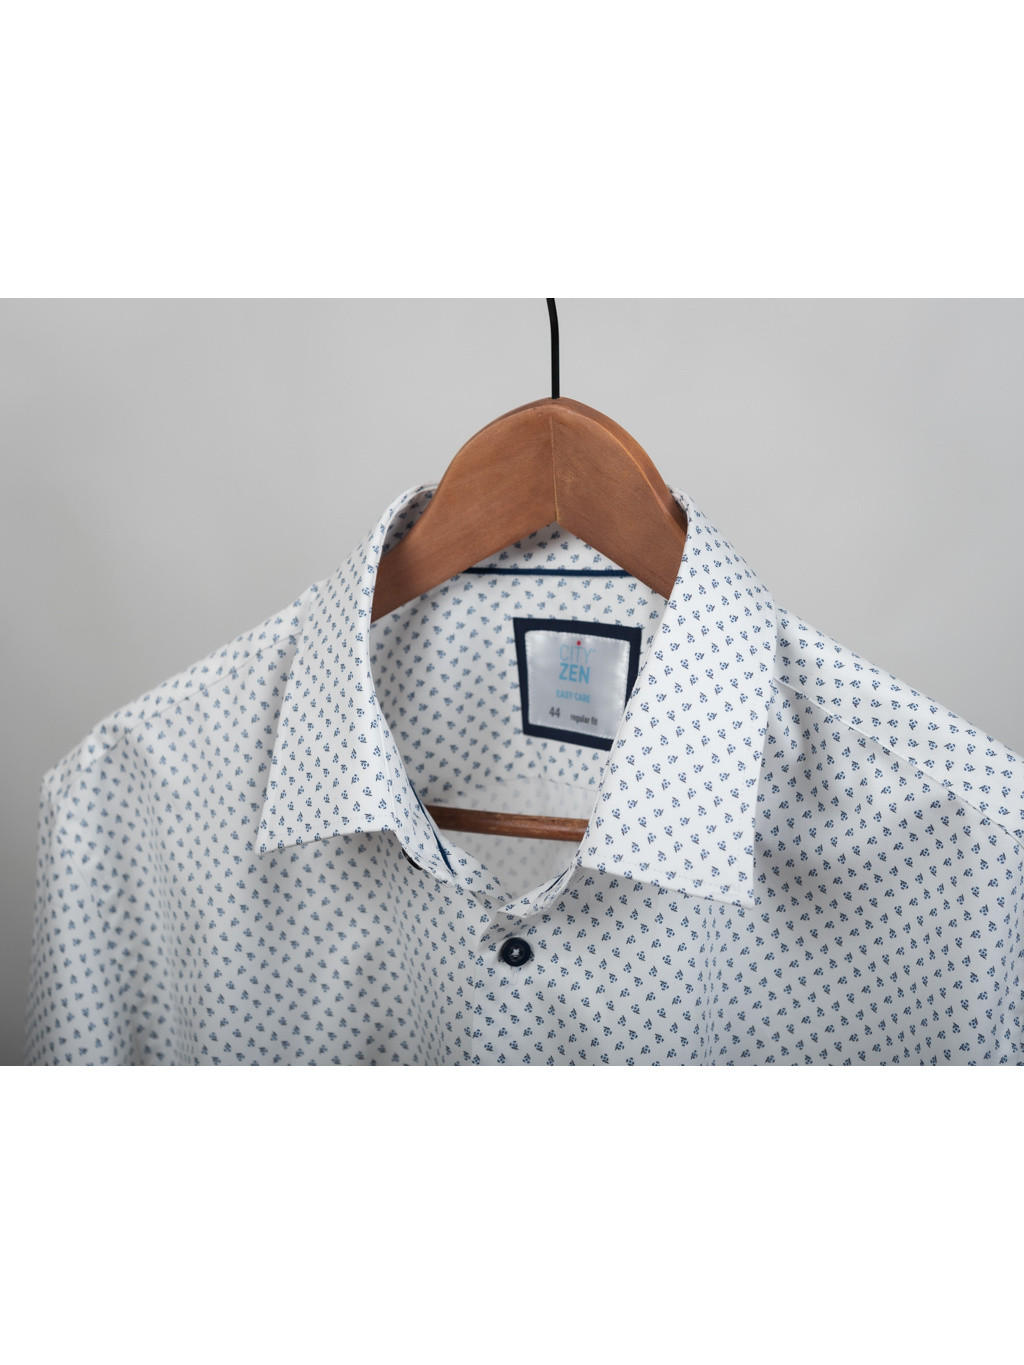 Bavlněná pánská košile CityZen bílá s modrým vzorem